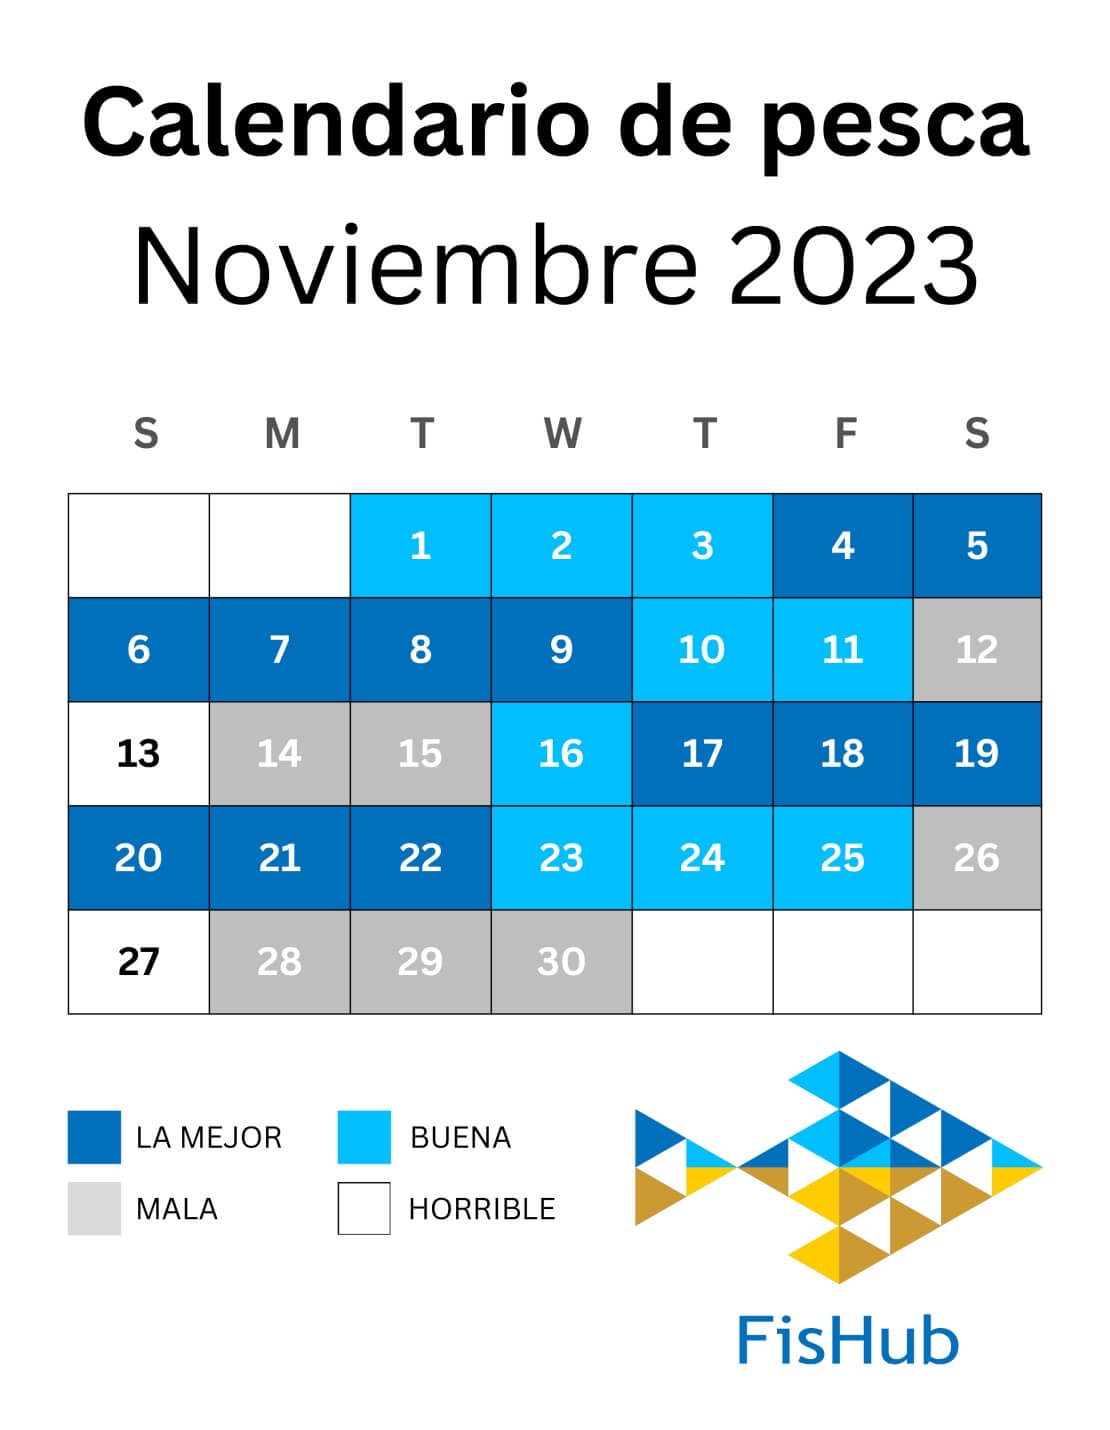 Calendario de pescadores para noviembre de 2023